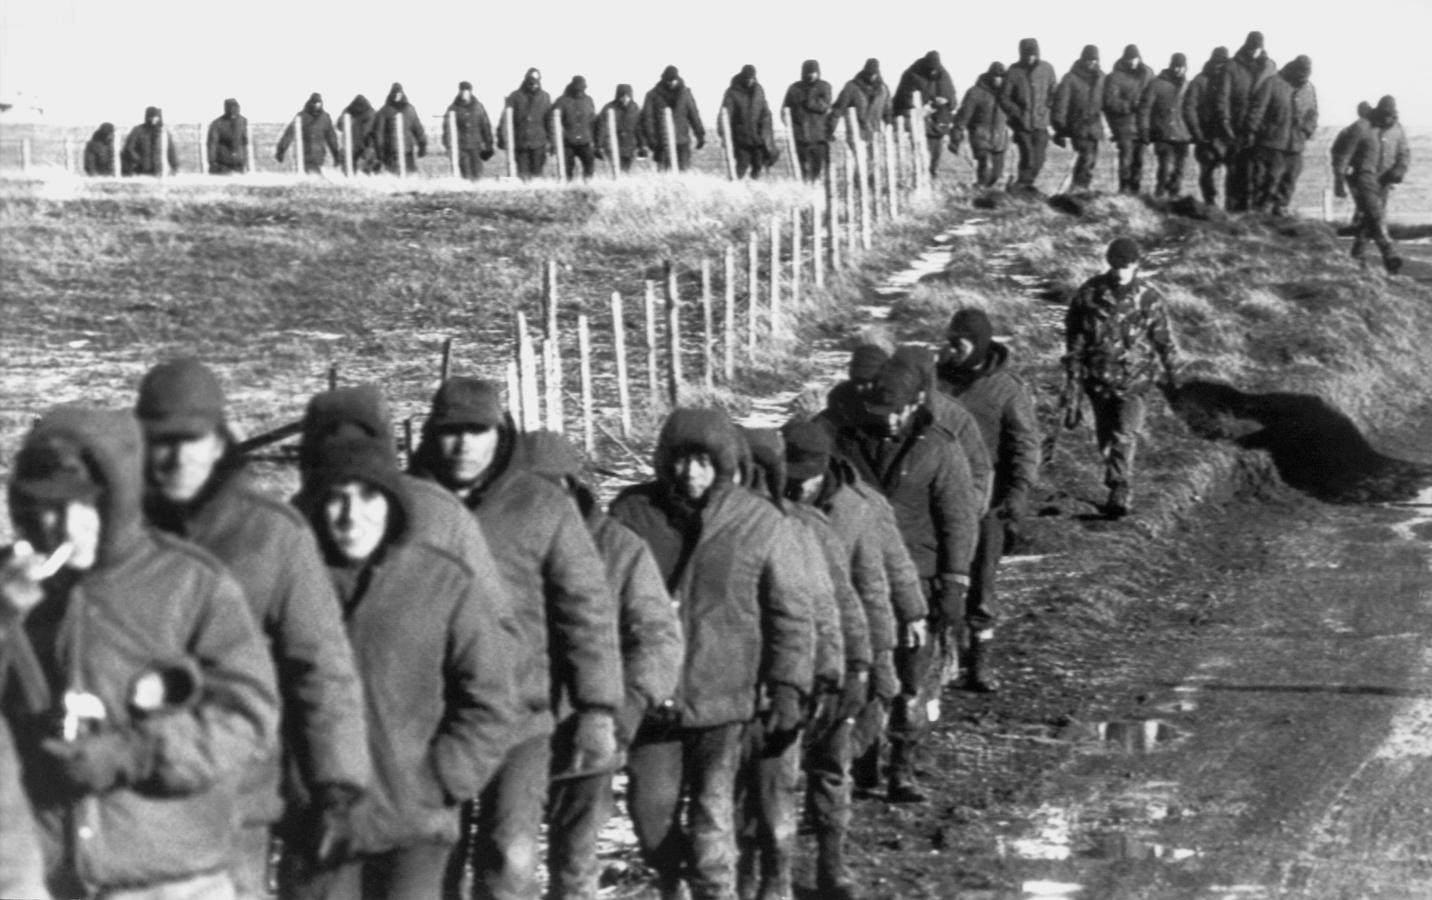 Los soldados argentinos (en primer plano) son escoltados por soldados británicos después de rendirse el 2 de junio de 1982 cerca de Goose Green, durante la Guerra de las Malvinas 